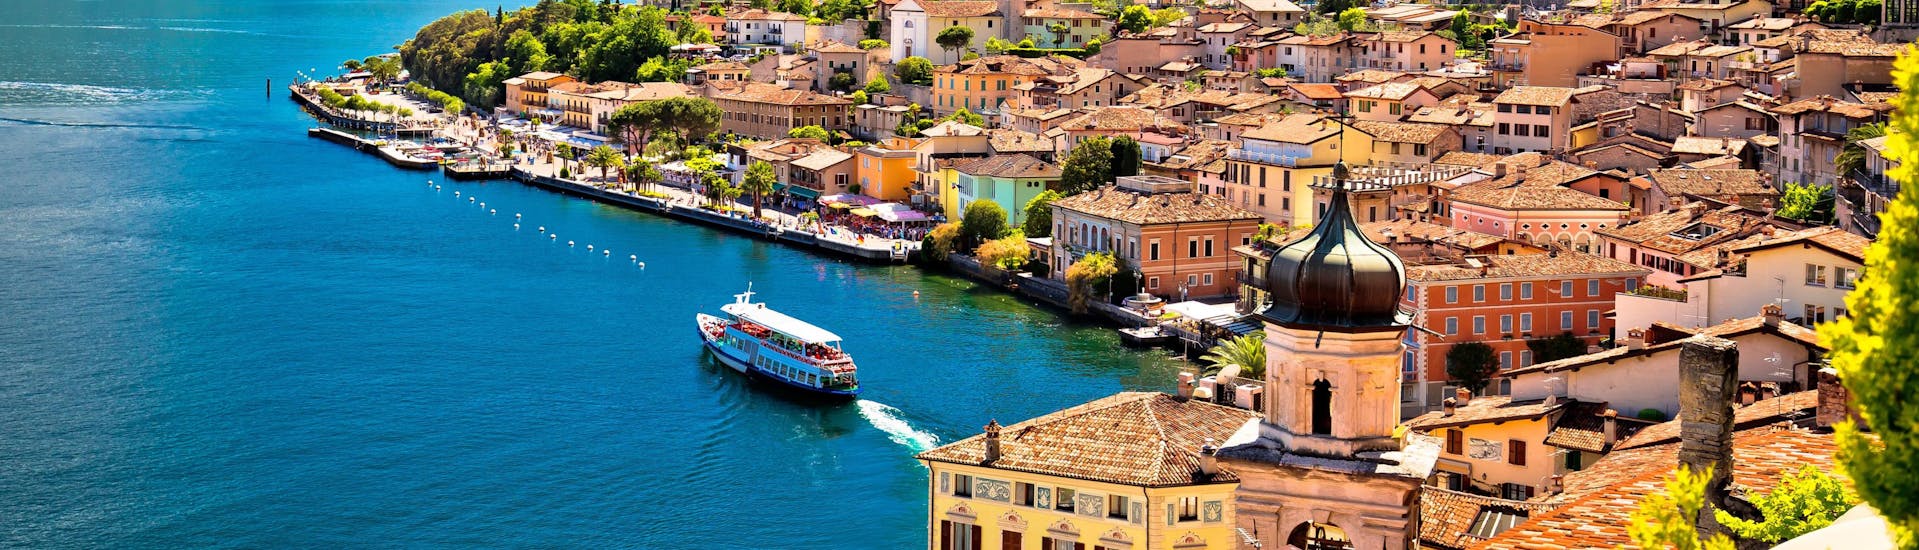 La ville de Limone sul Garda, au bord du lac de Garde, où l'on peut réserver en ligne des excursions en bateau.